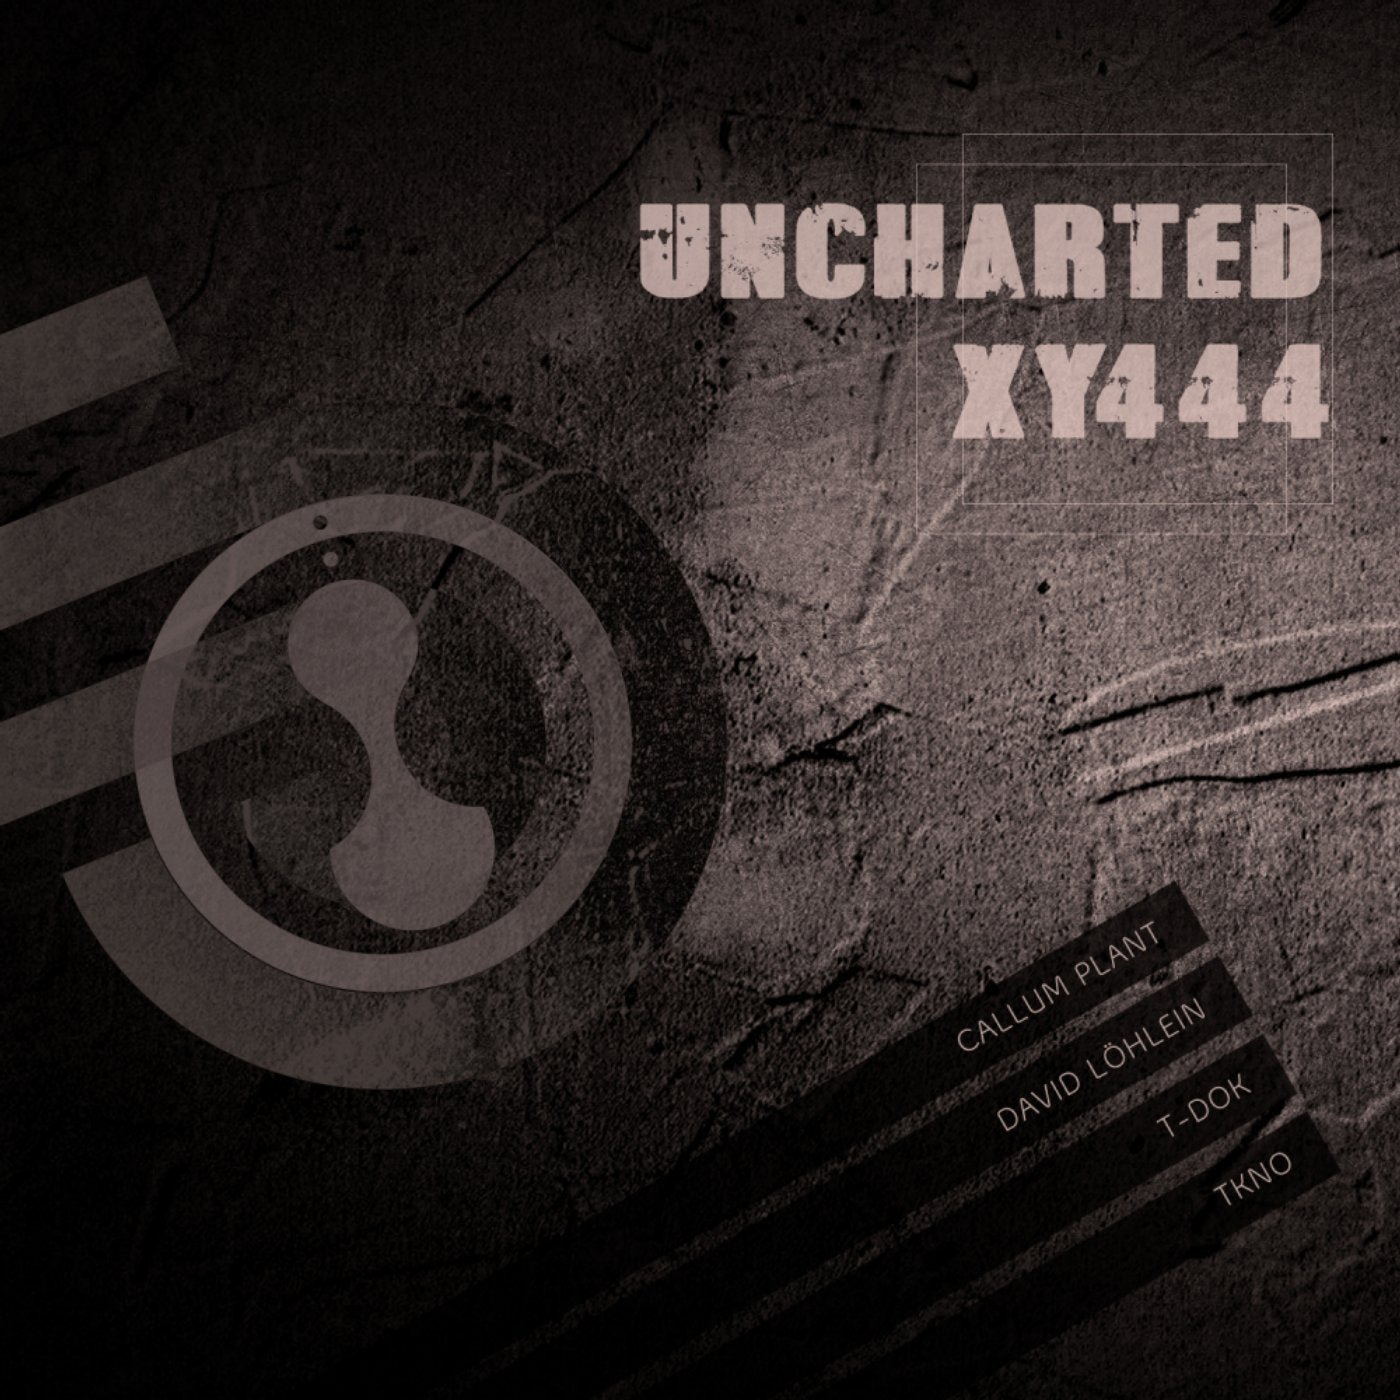 Uncharted XY444